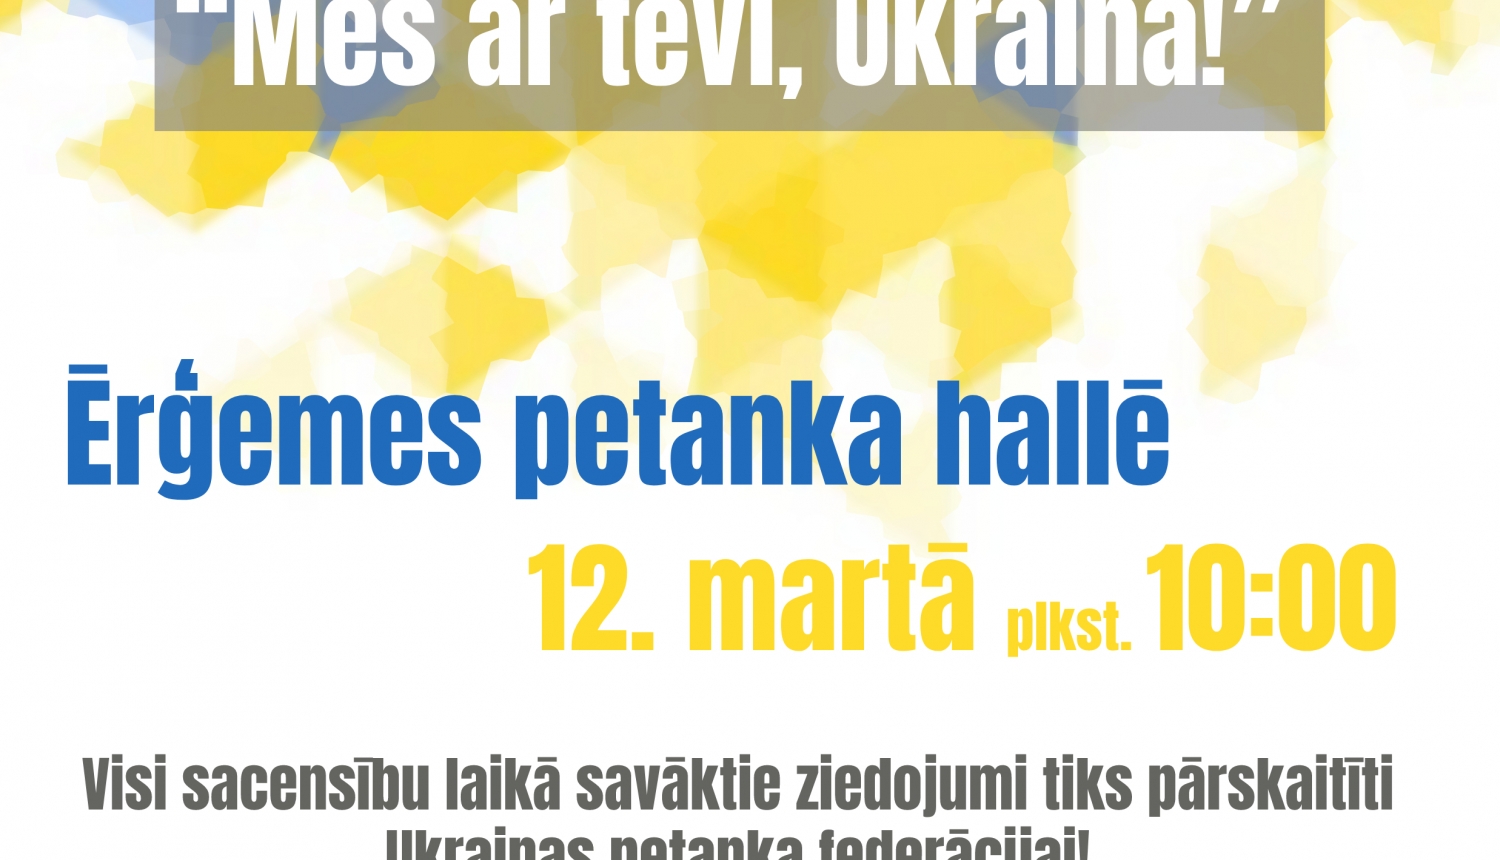 Ērģemē organizē labdarības petanka turnīru "Mēs ar tevi, Ukraina!"